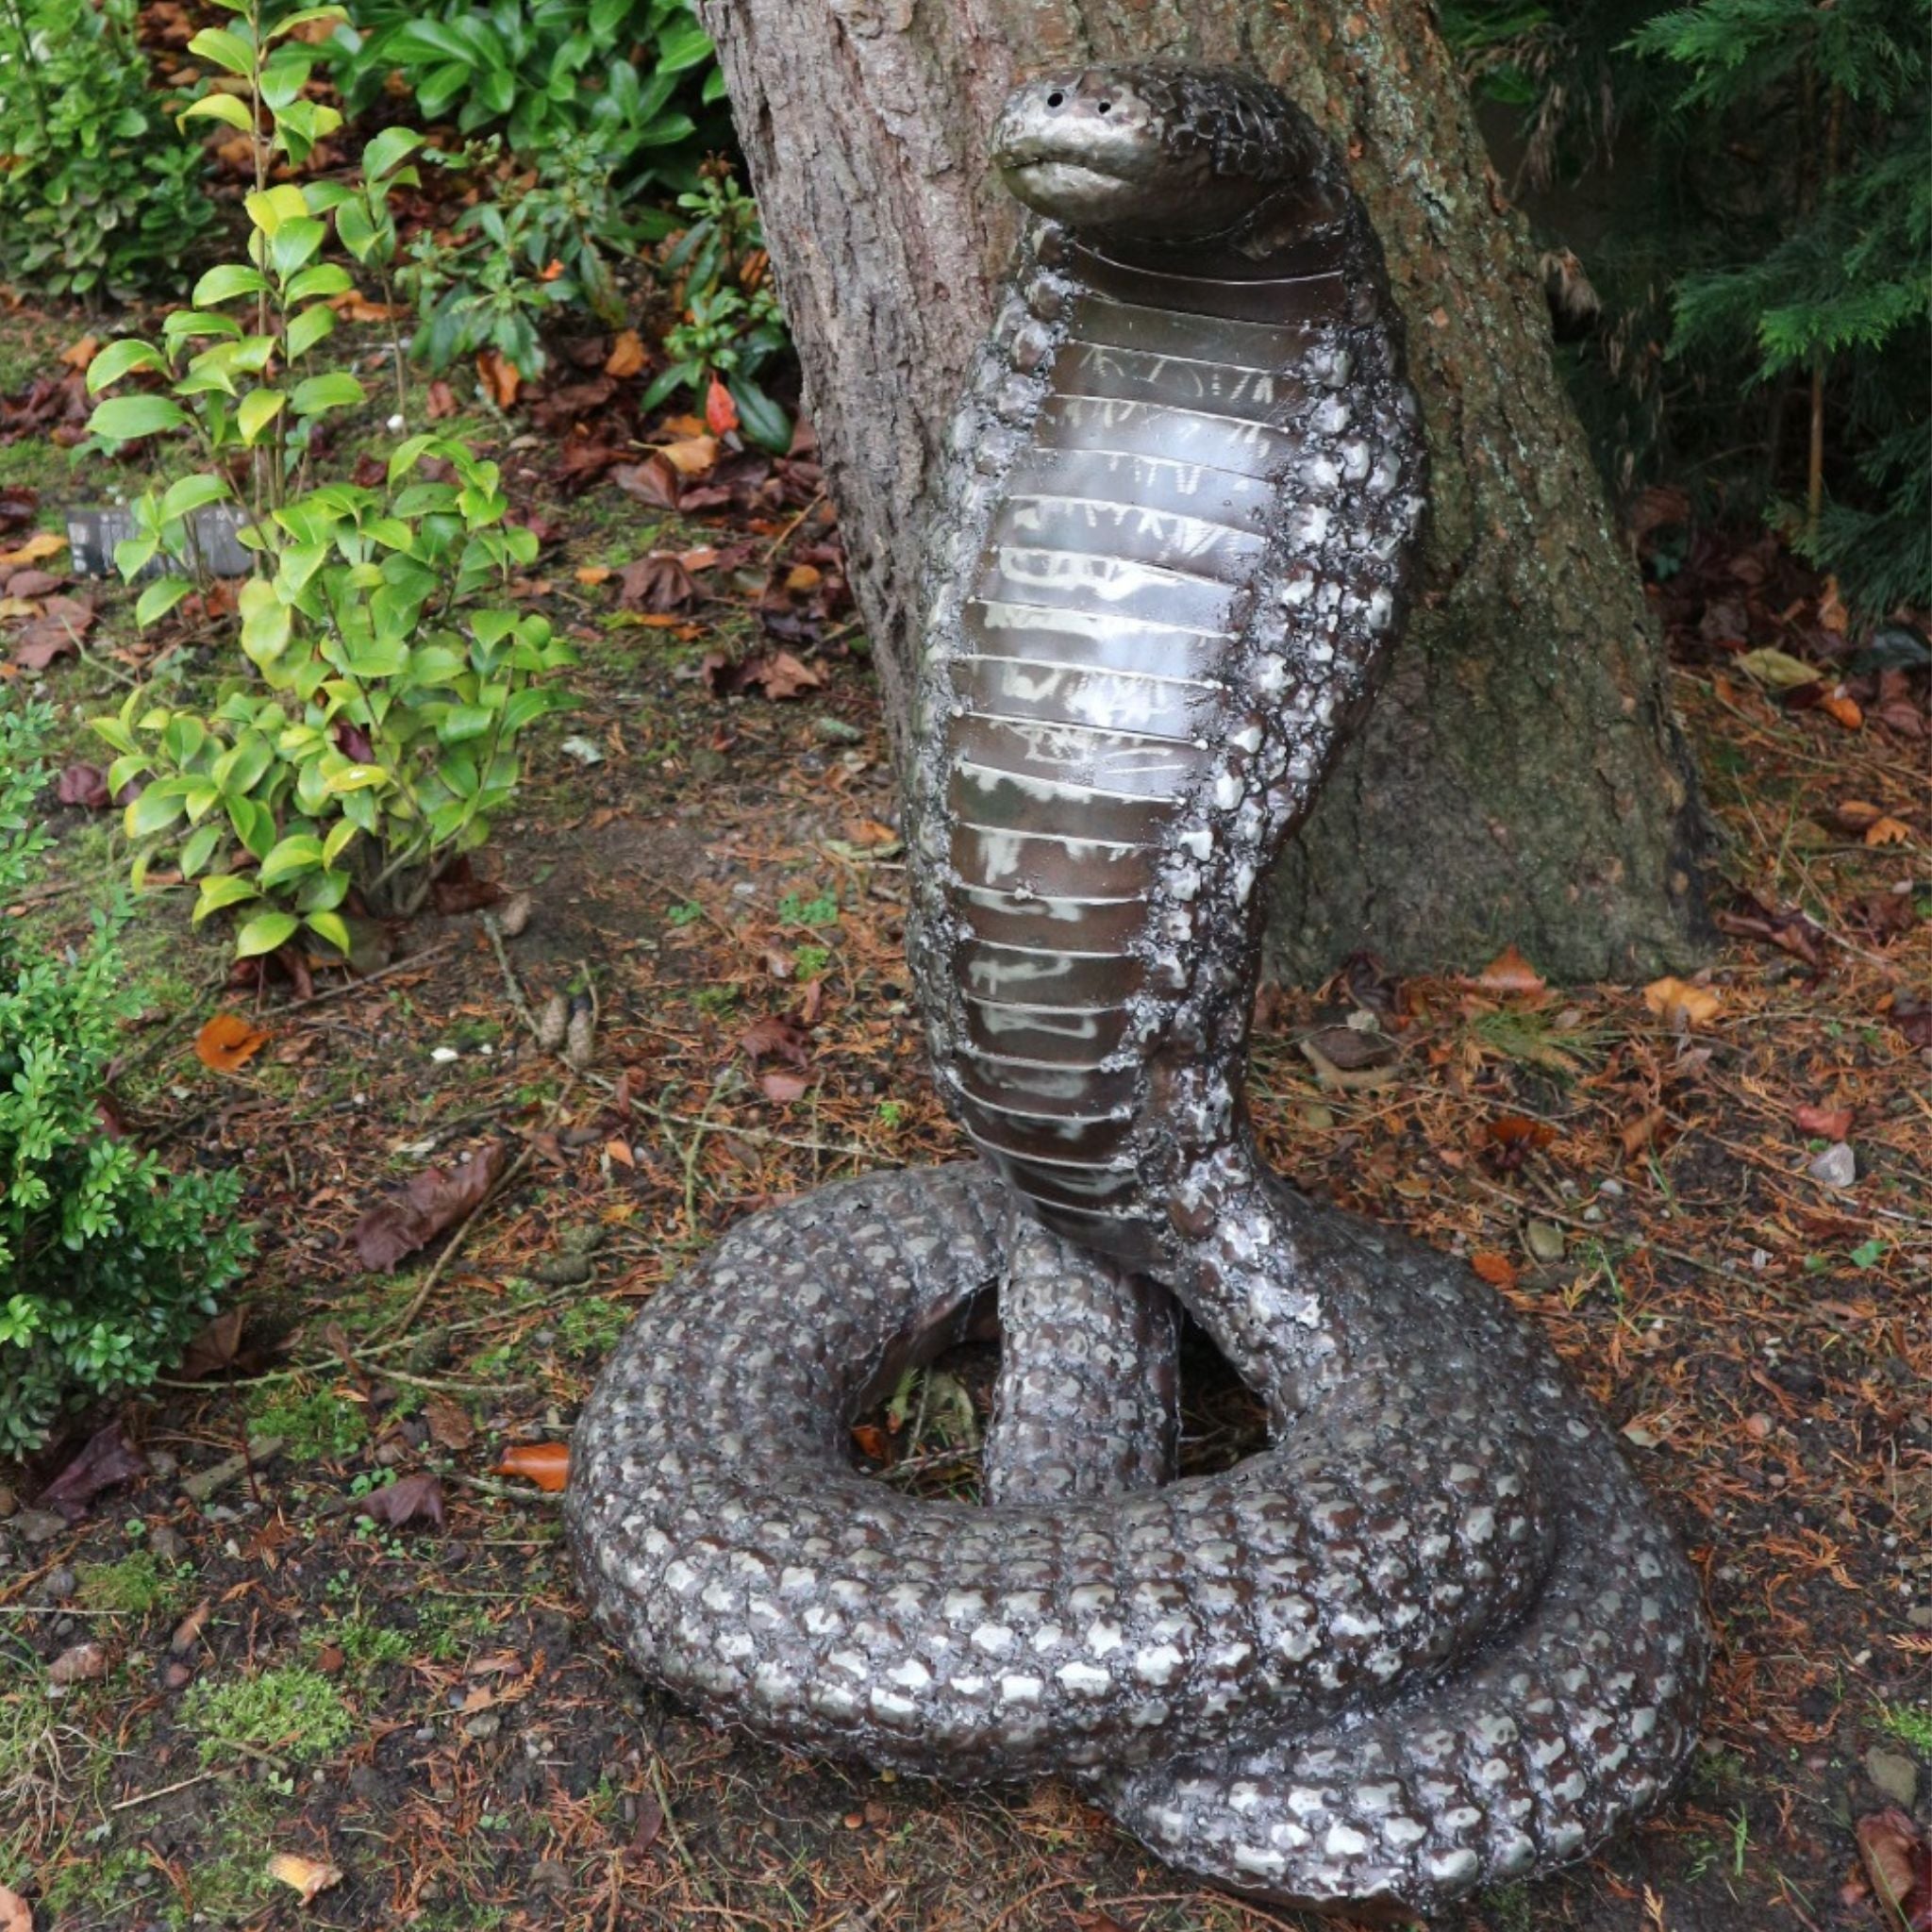 King Cobra - Pangea Sculptures